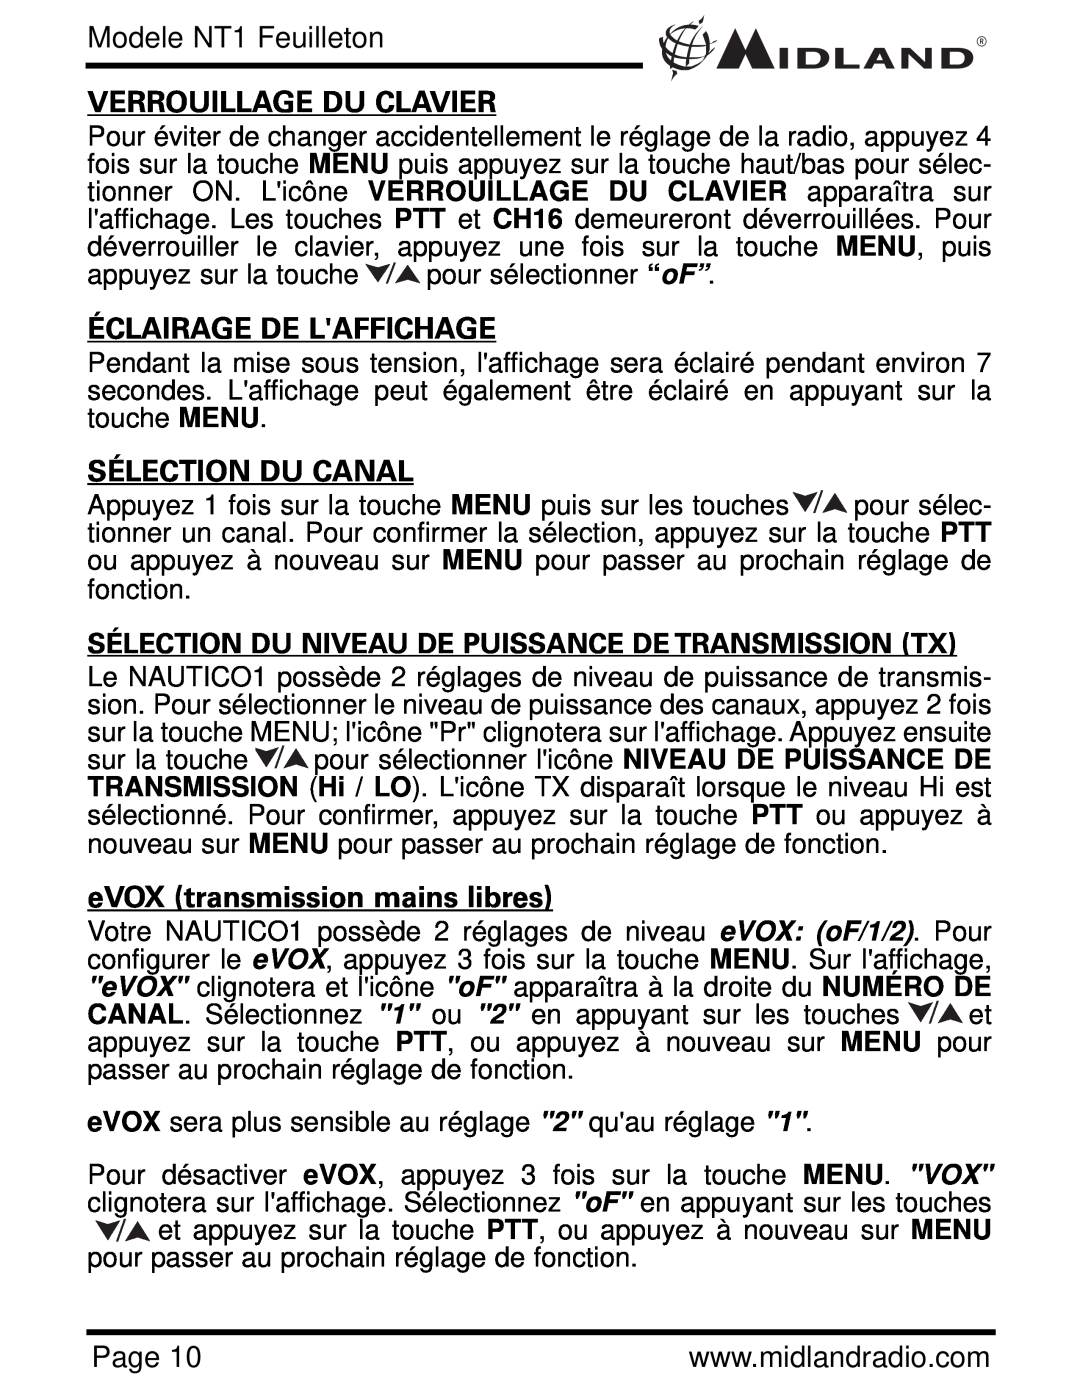 Midland Radio NT1VP Verrouillage Du Clavier, Éclairage De Laffichage, Sélection Du Canal, eVOX transmission mains libres 